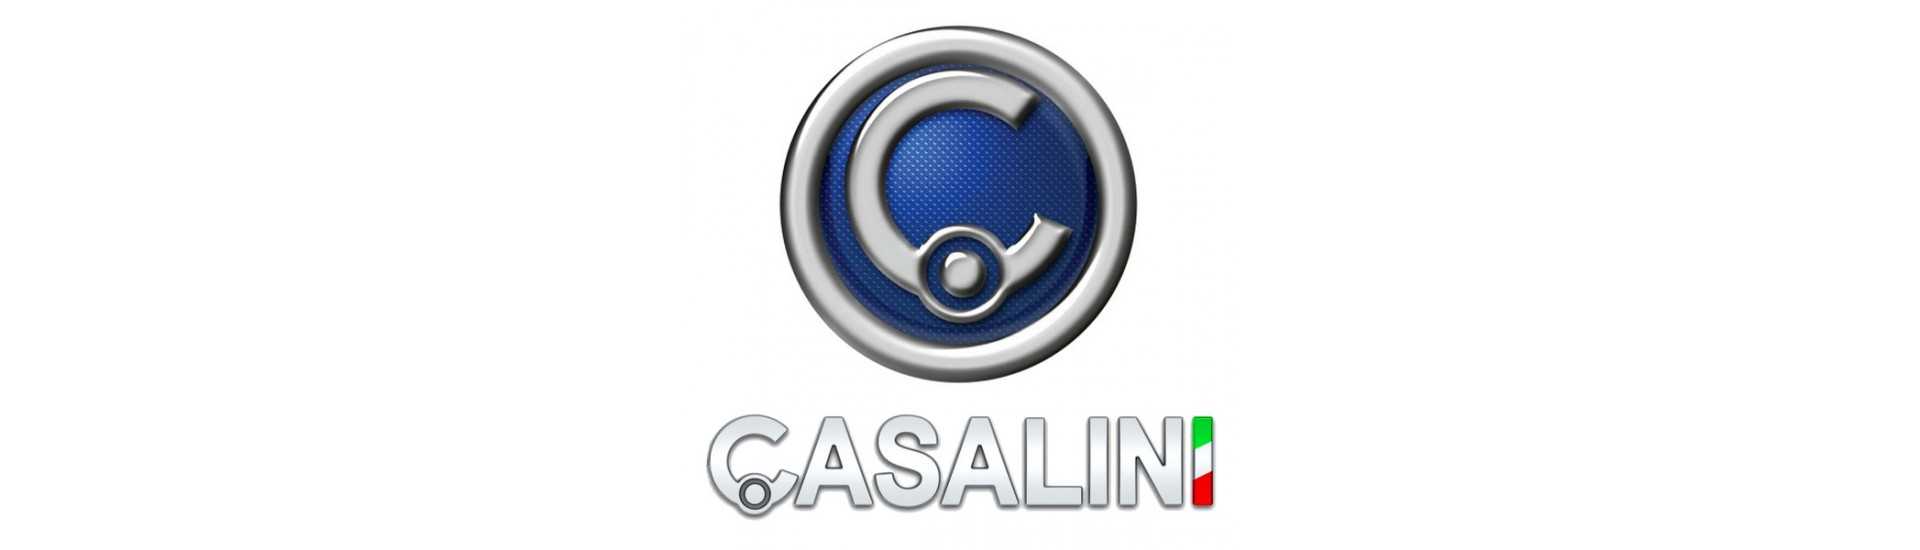 triángulo frontal al mejor precio para coche sin un permiso Casalini